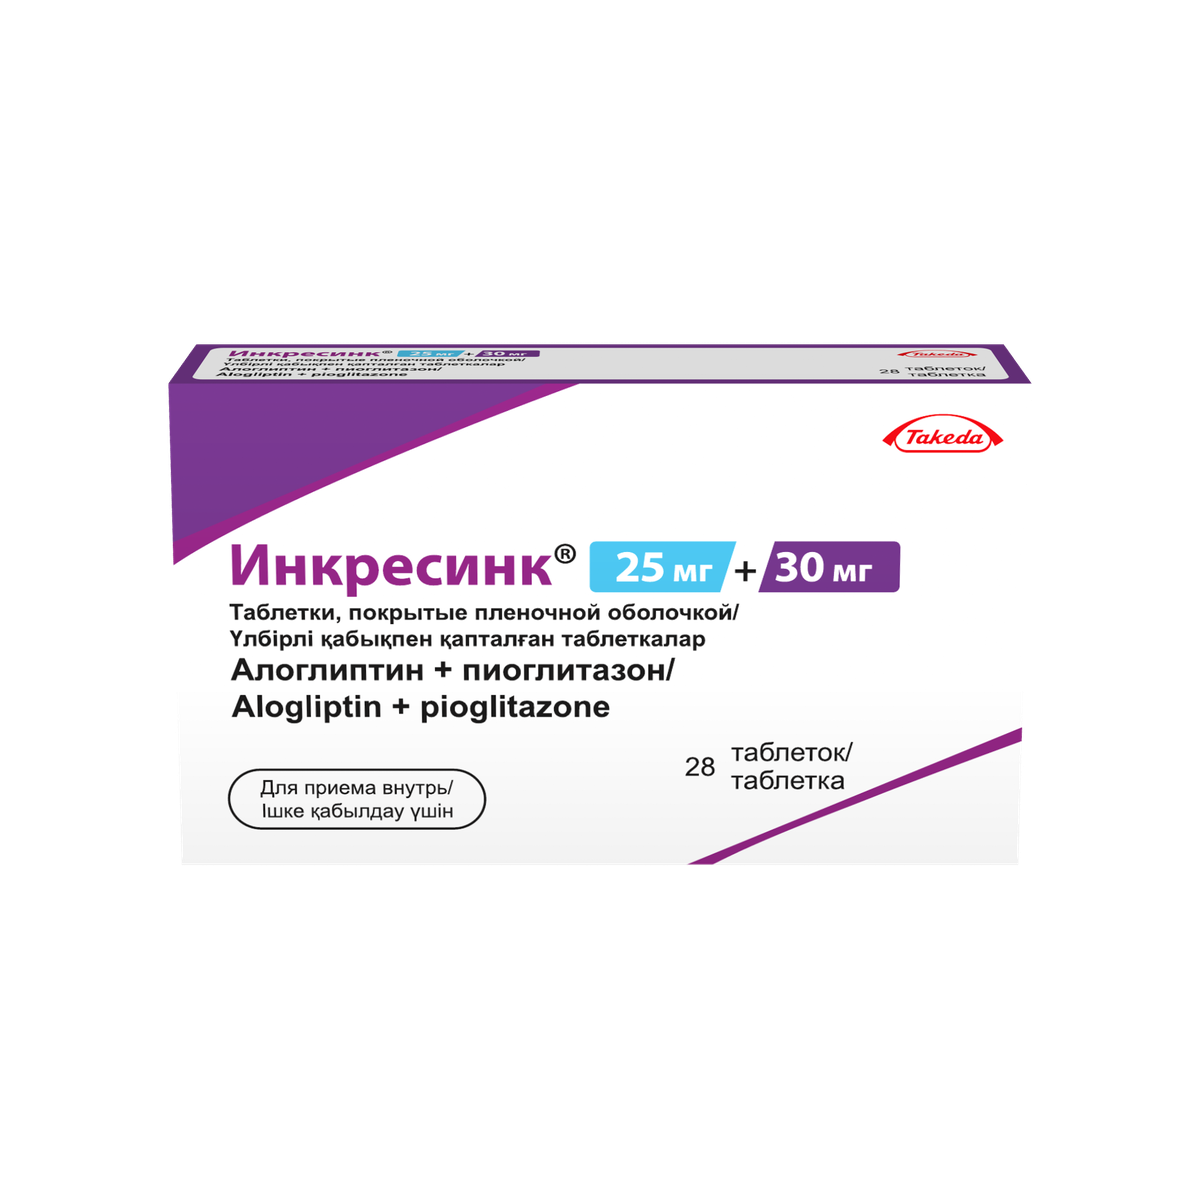 Инкресинк (таблетки, 28 шт, 25+30 мг+мг) - цена,  онлайн  .